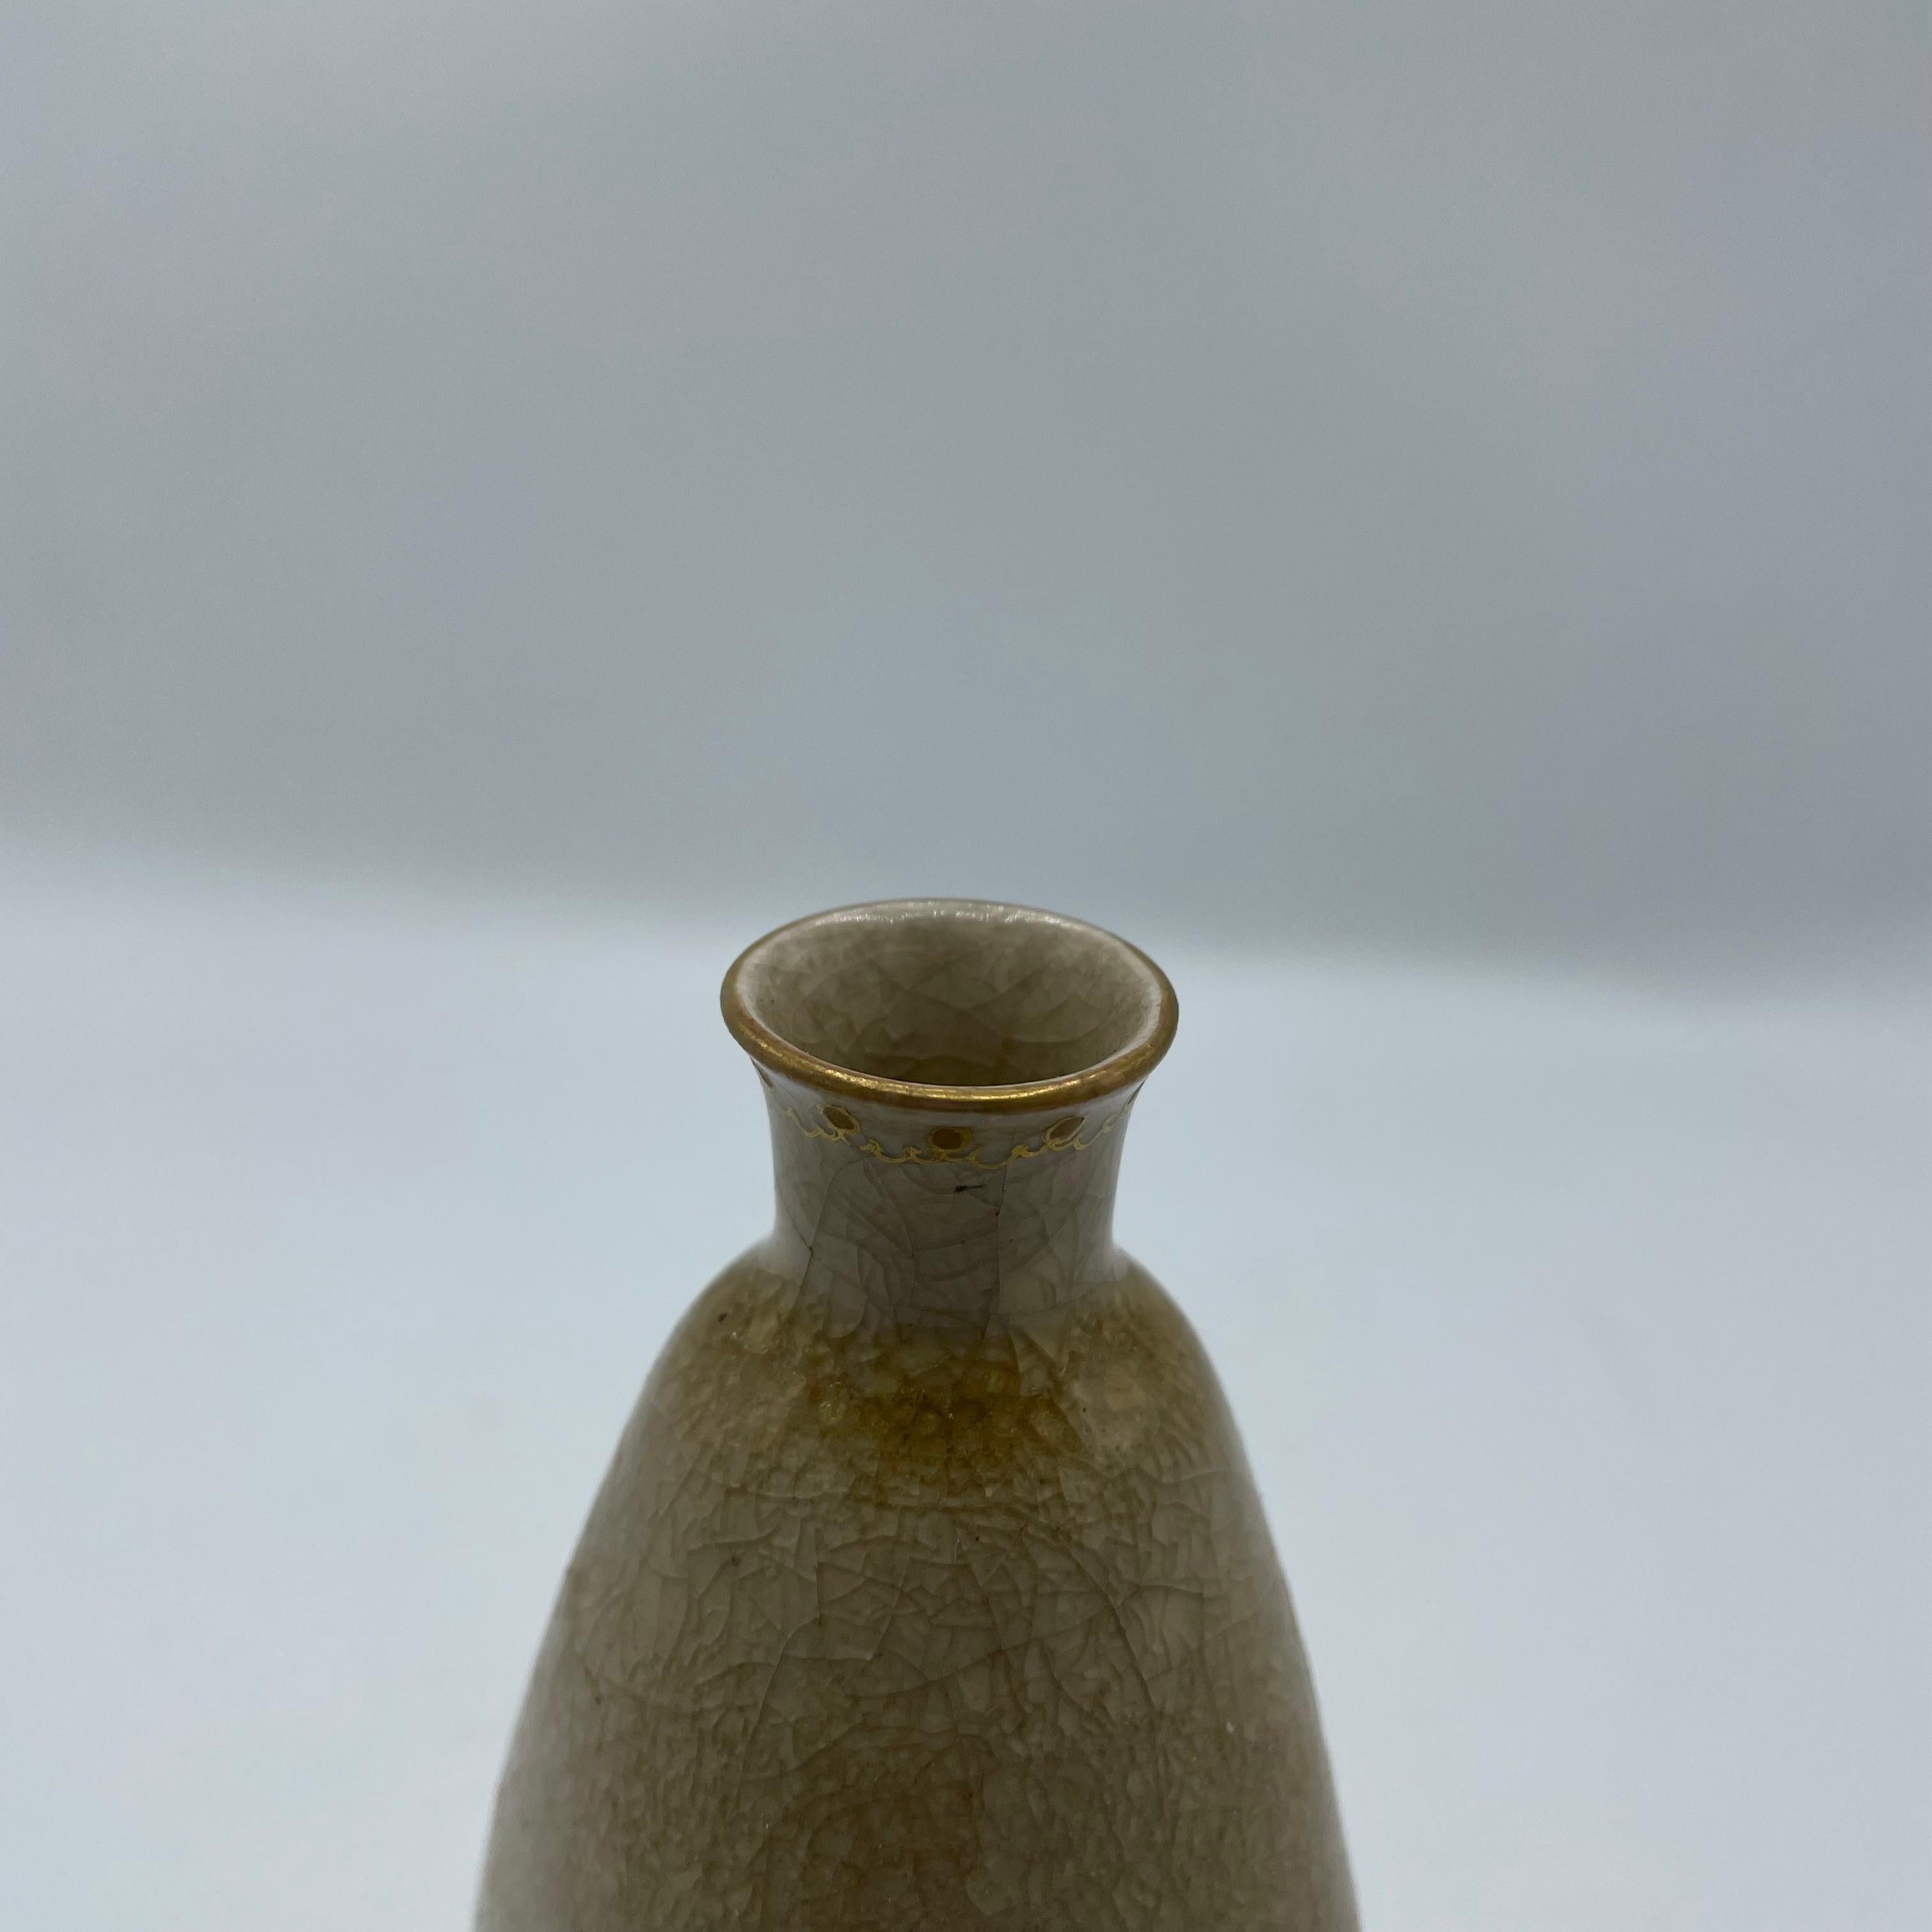 Porcelain Japanese Antique Sake Bottle Tokkuri Chrysanthemum 1960s